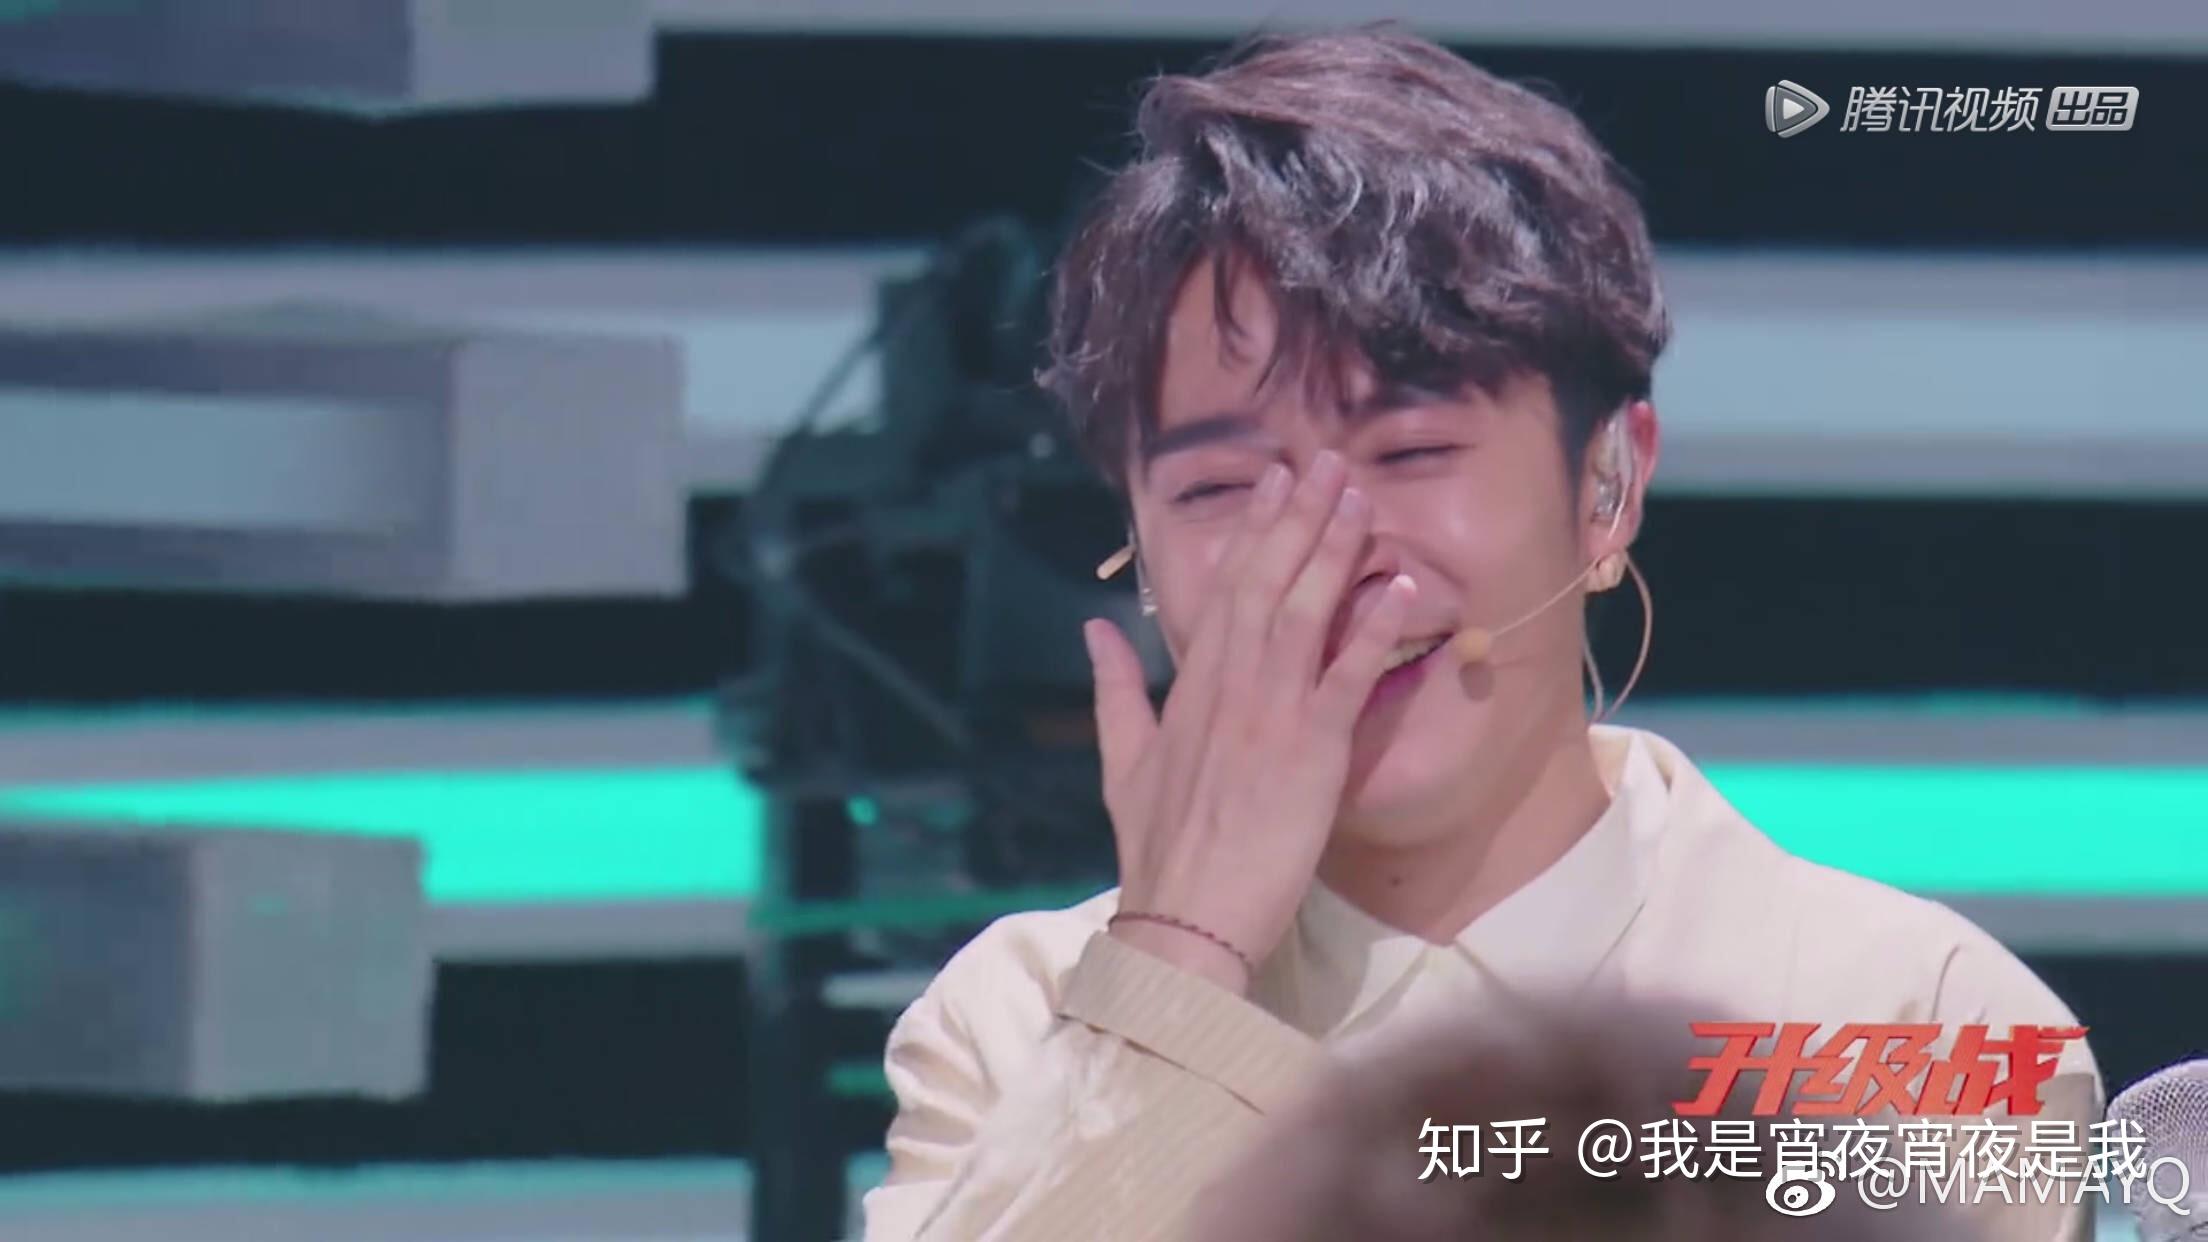 如何看待《明日之子》第二季第四期吴青峰「哭了」并自责名气不高?